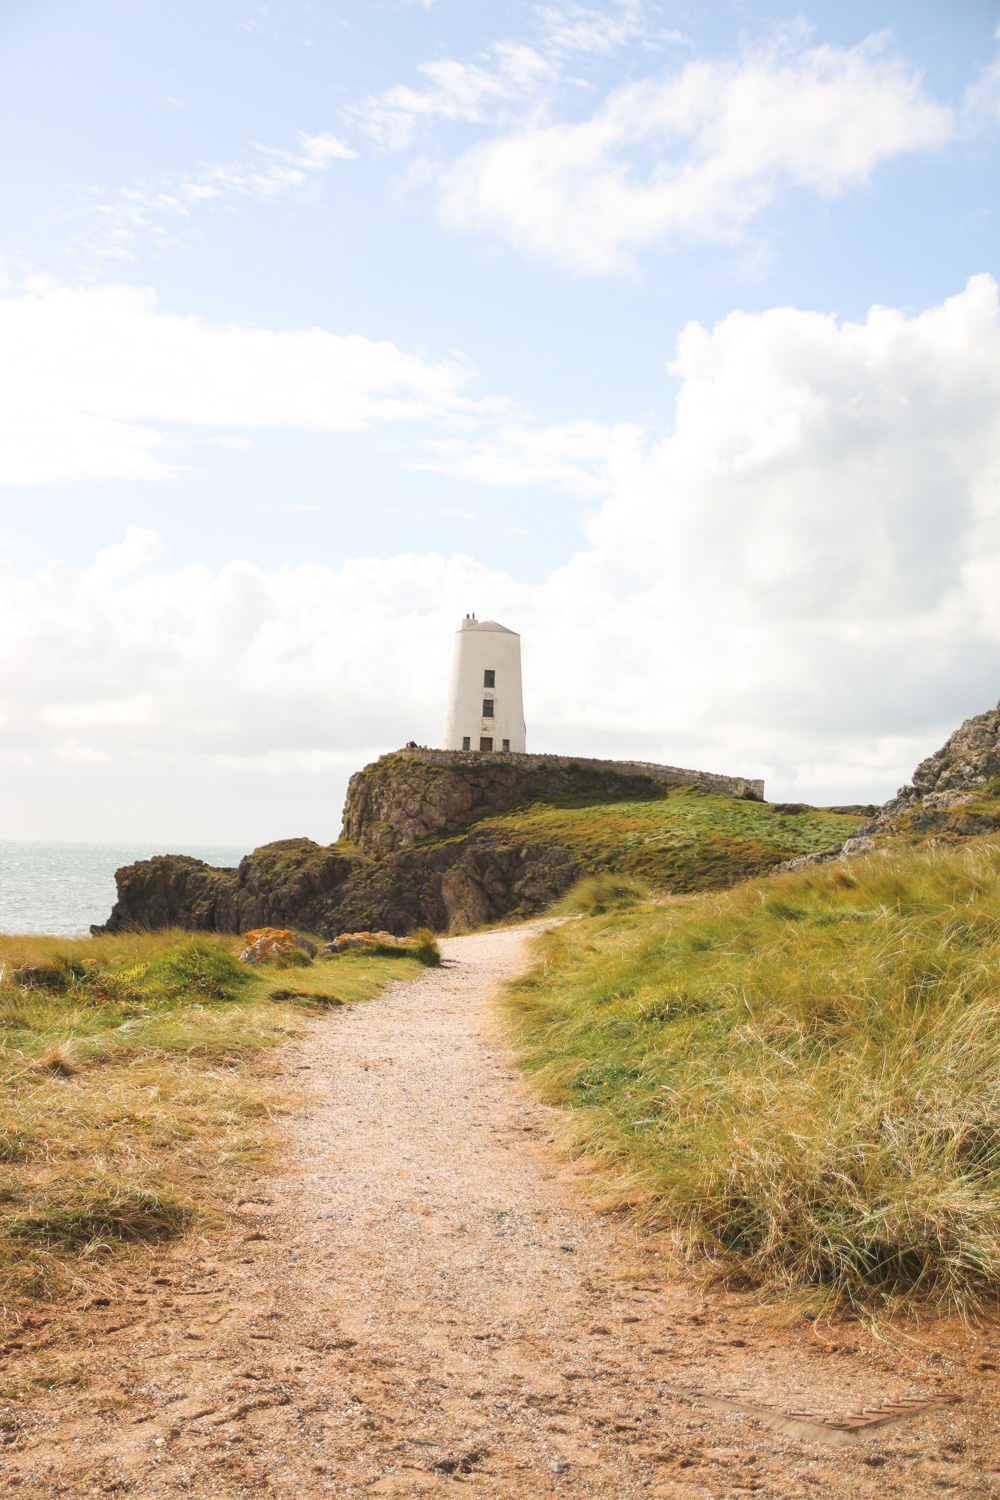 Tŵr Bach lighthouse, Llanddwyn Island, Anglesey, Wales